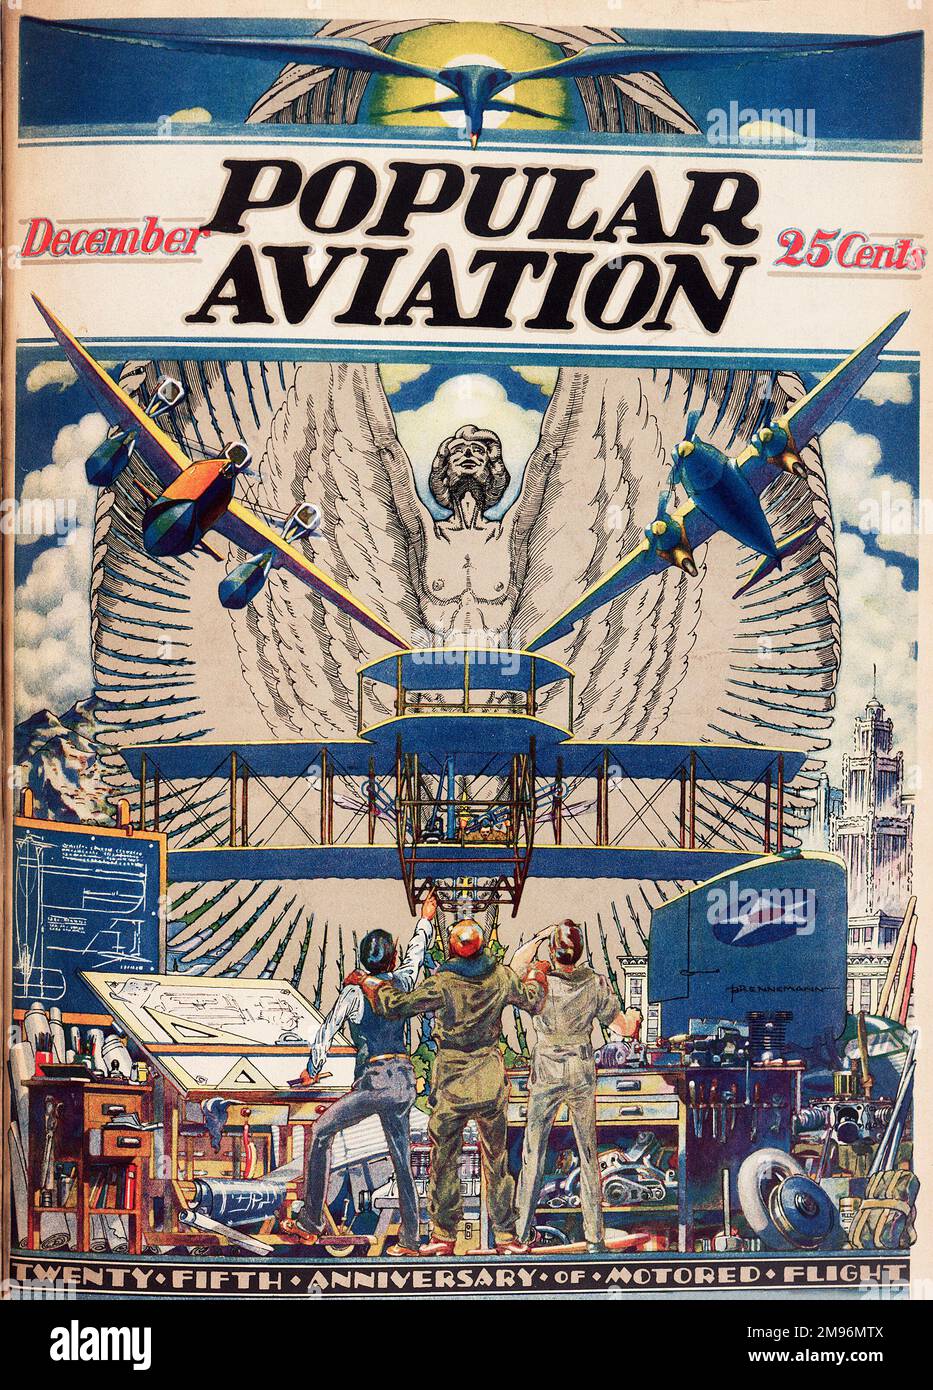 Diseño de portada, Popular Aviation Magazine, que muestra a tres dibujantes con sus diseños, mirando asombrados por sus inventos, para conmemorar el 25th aniversario del vuelo motorizado. Foto de stock